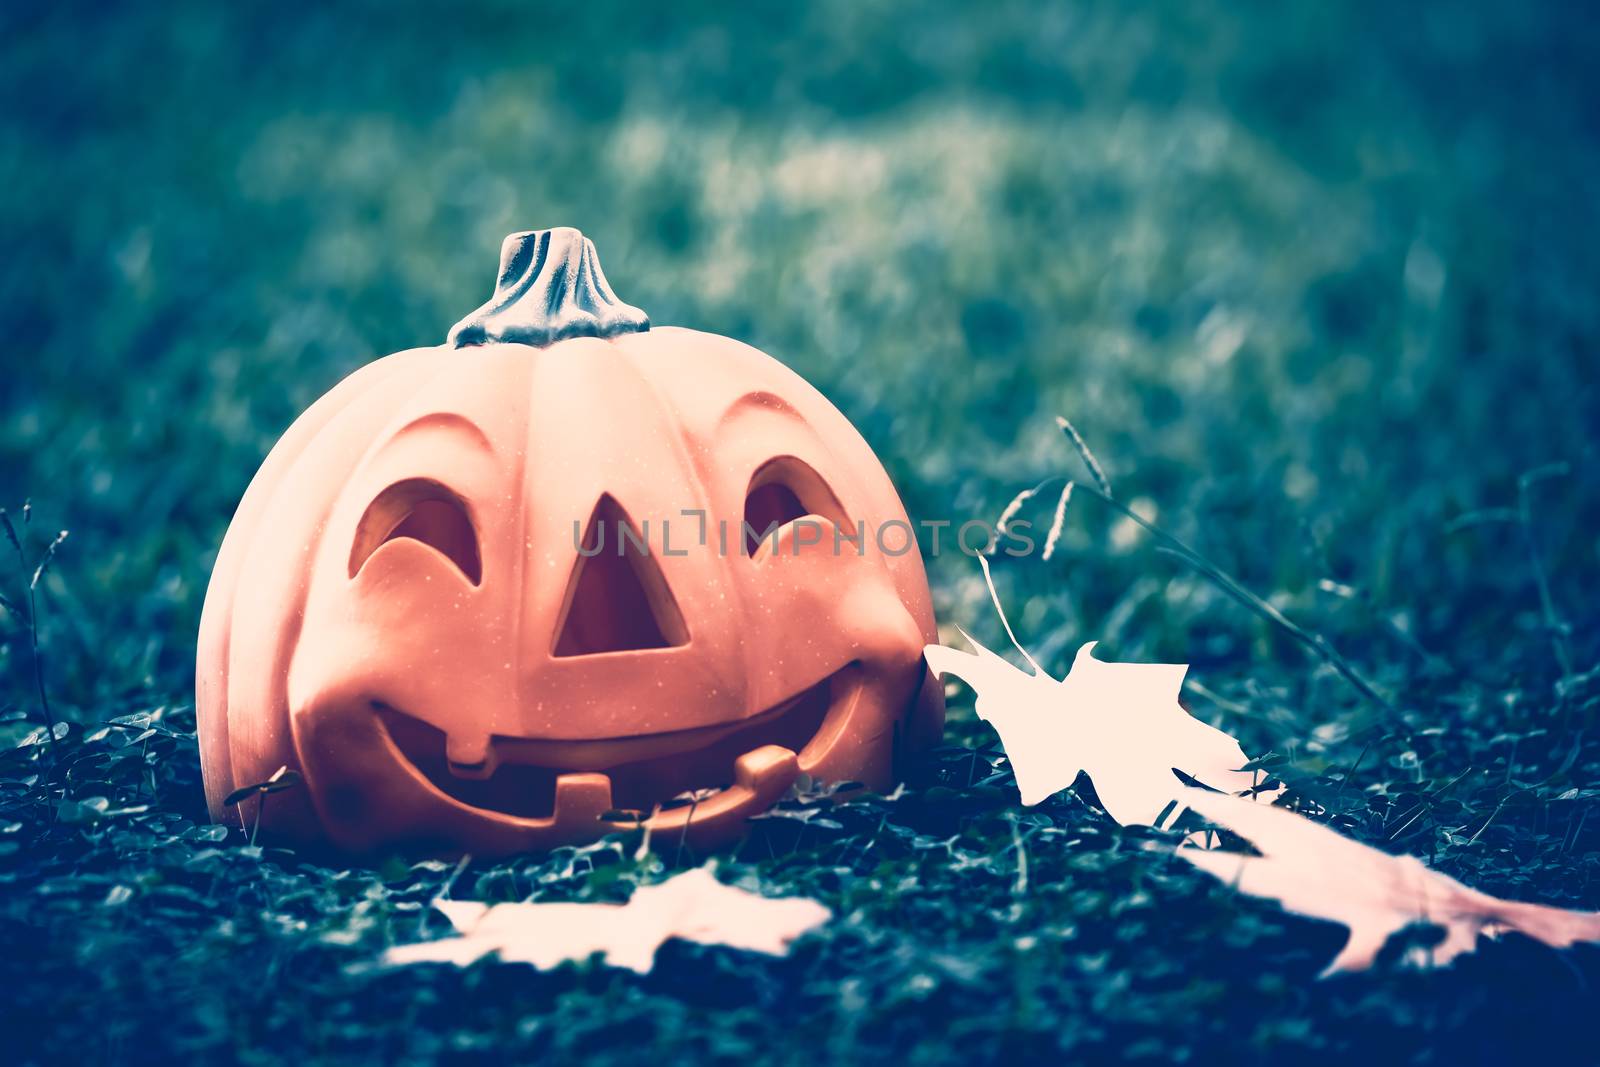 Halloween pumpkin in the forest by Anna_Omelchenko